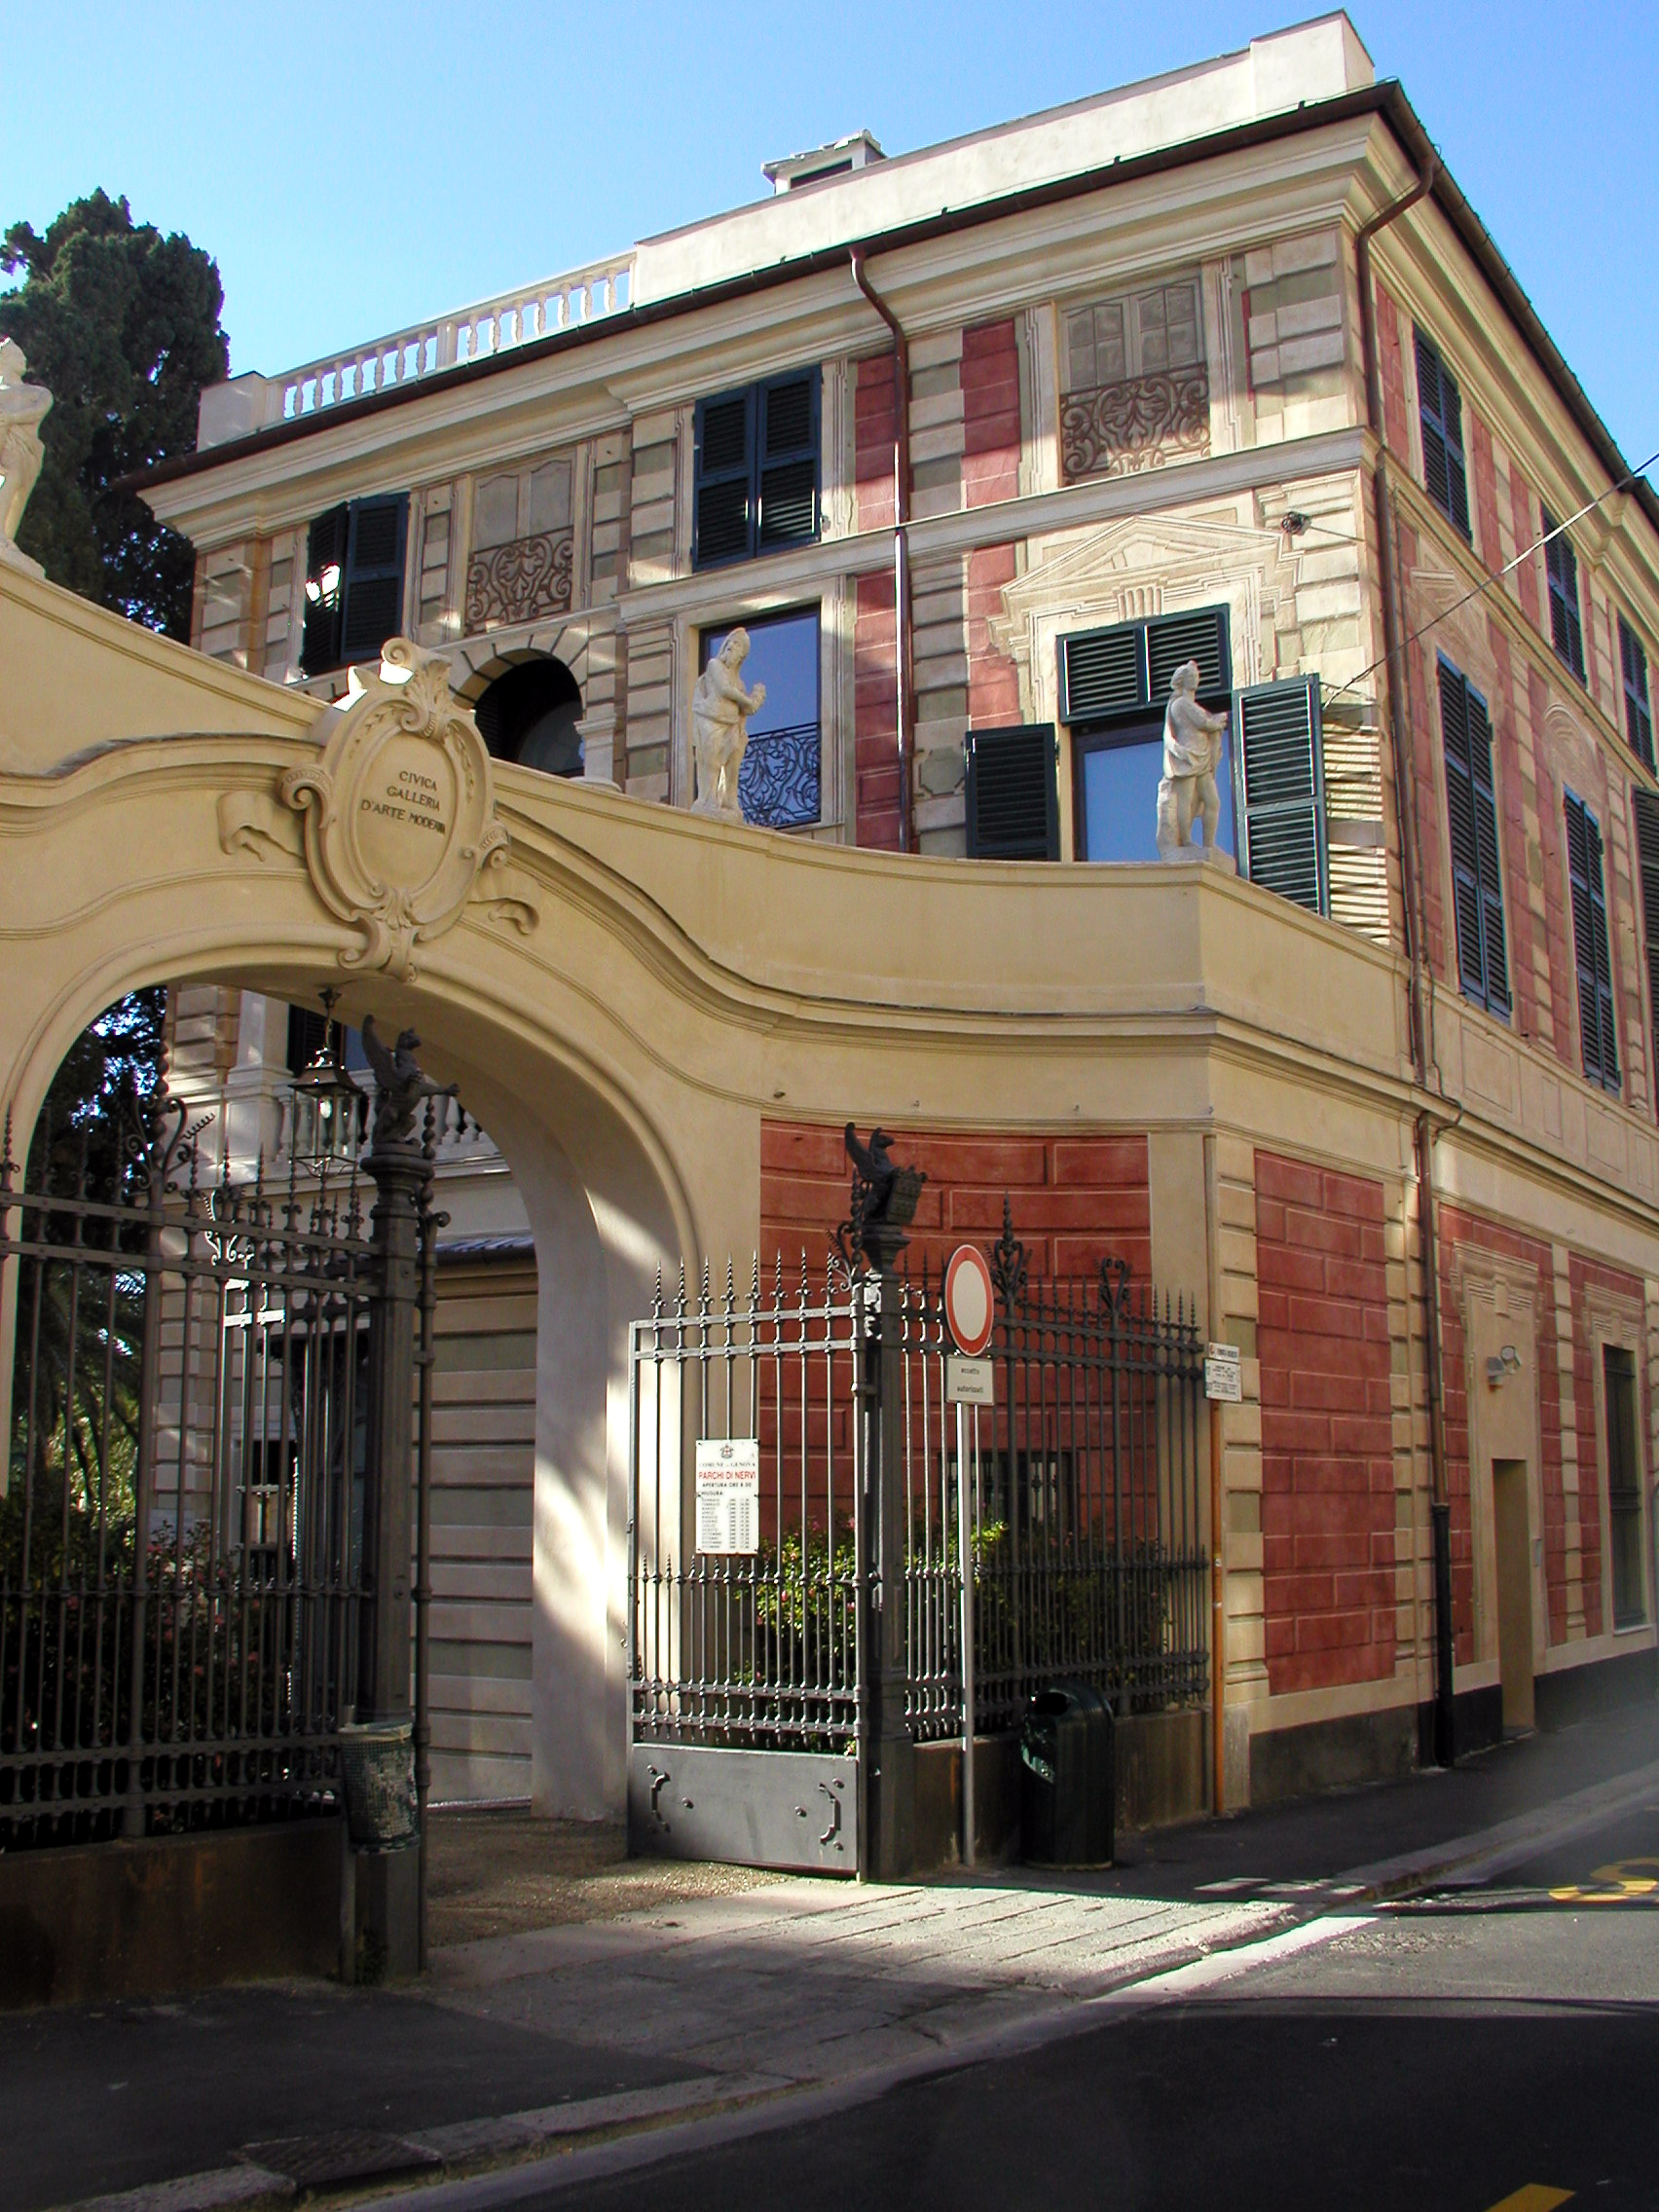 Villa Saluzzo Serra, Galleria d'Arte Moderna di Genova, ingresso